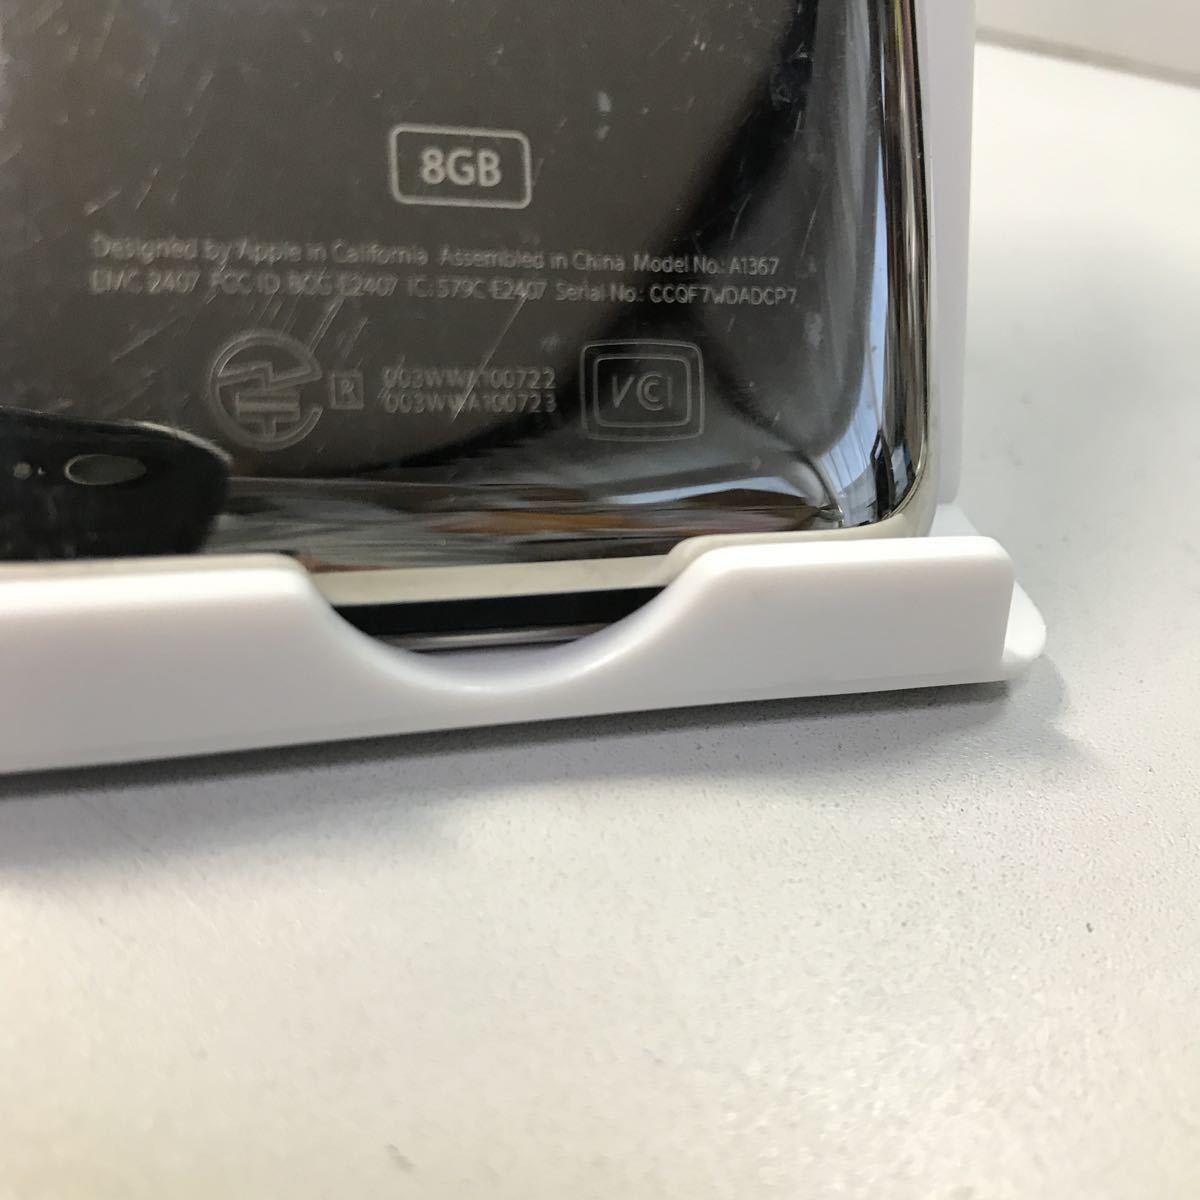 iPod 8GB  модель  (A1367) серия NO CCQF7WD ADCP7( проверка включения произведена )